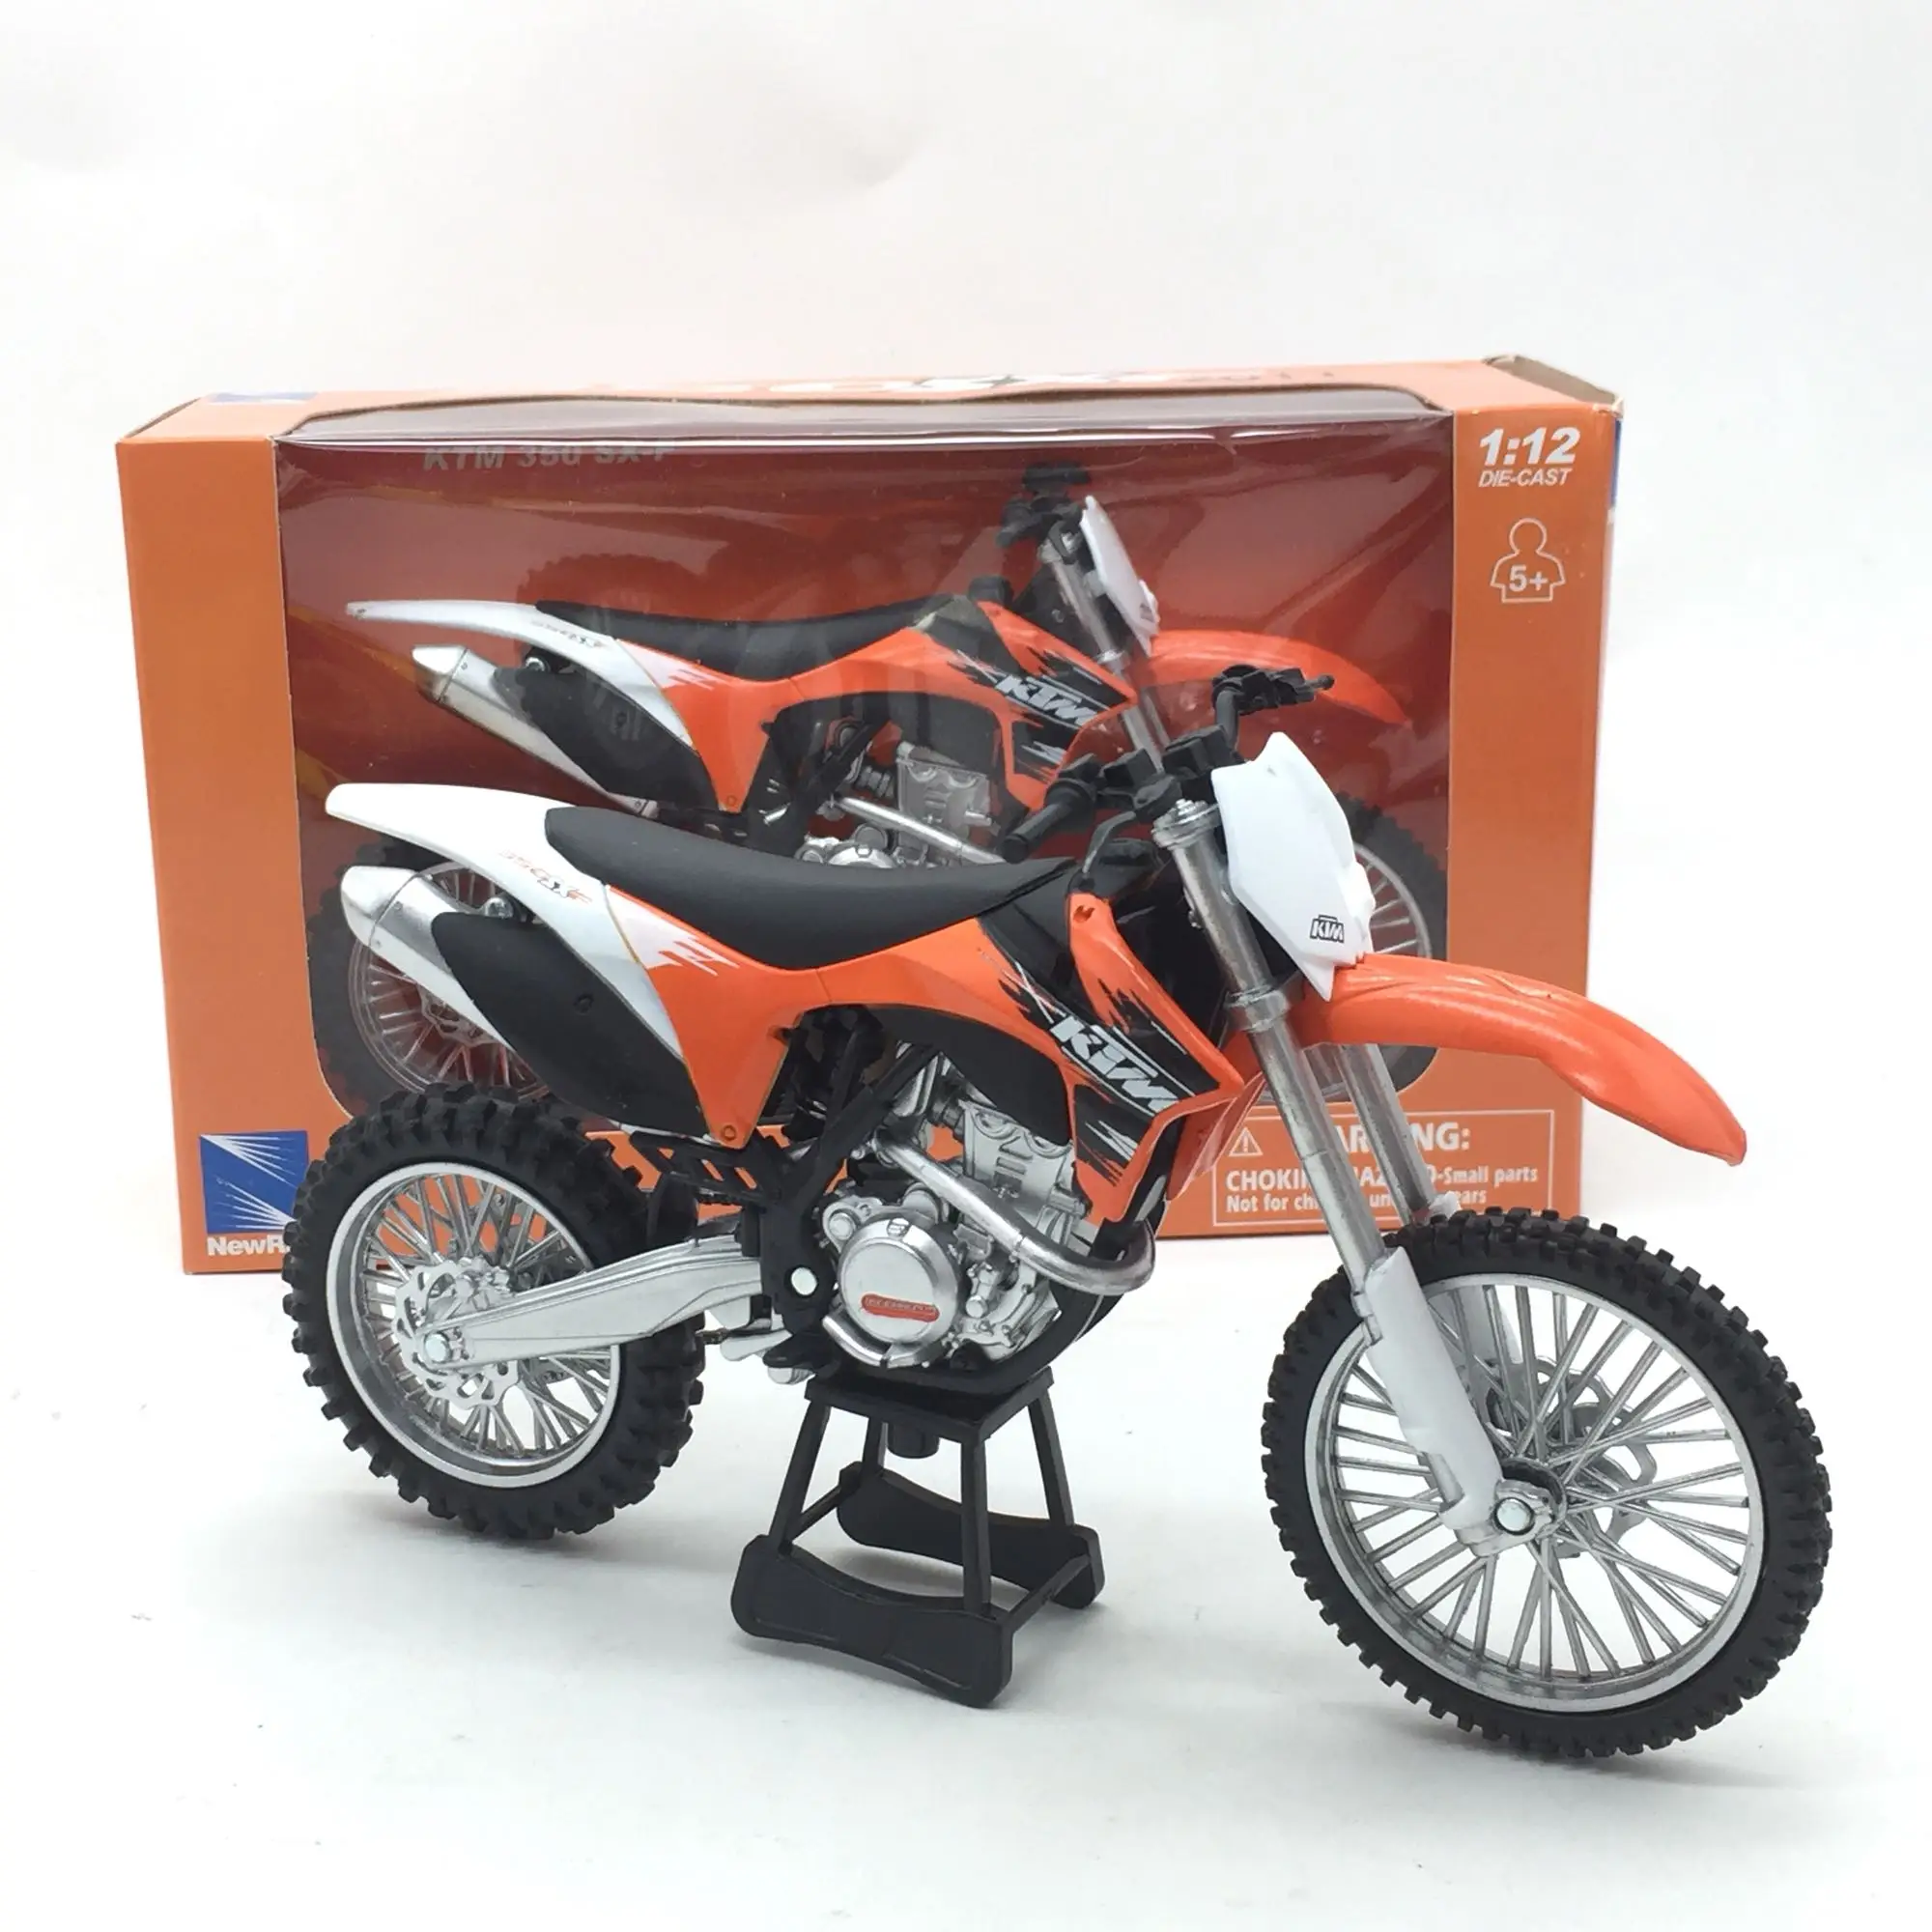 Имитация 1:12 KTM 350SX-F внедорожный мотоцикл, литая металлическая модель, коллекция моделей игрушечных автомобилей, Изысканные Подарки